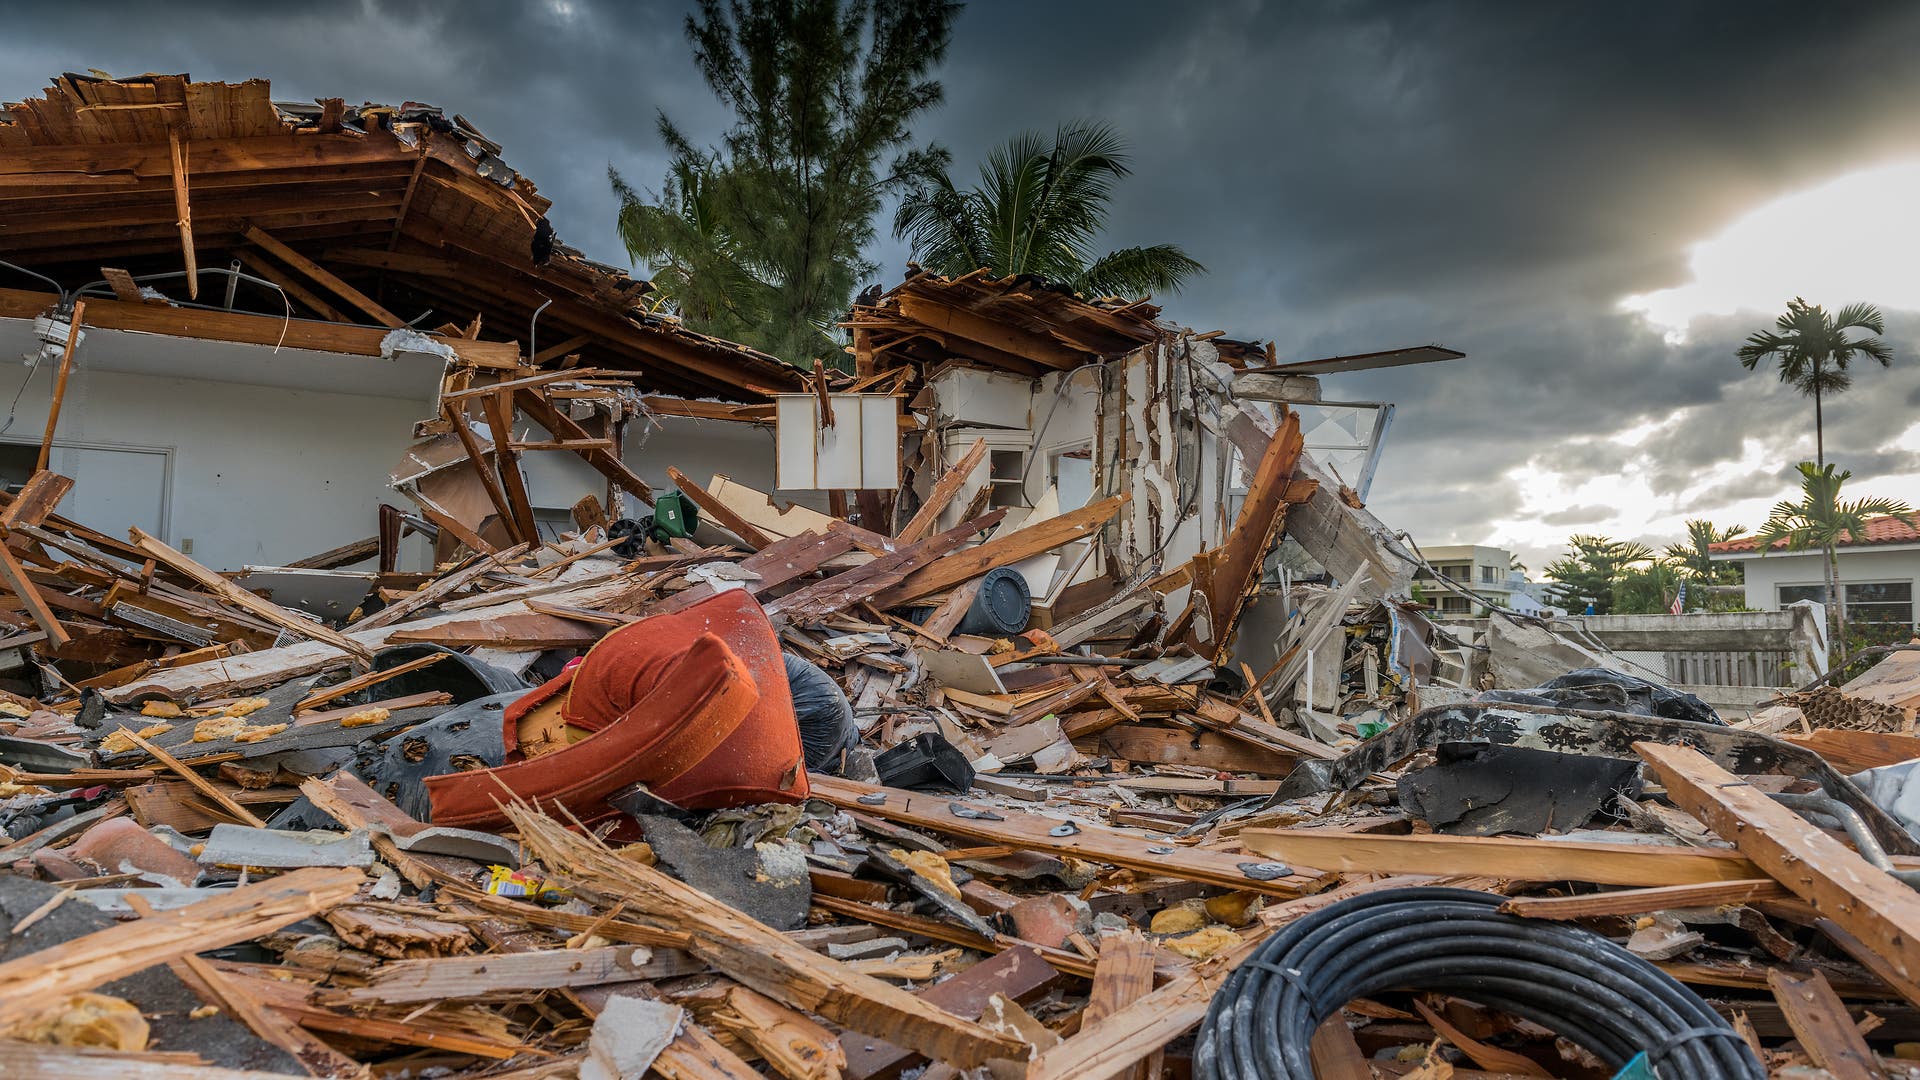 Durch Tornado zerstörtes Haus in den USA